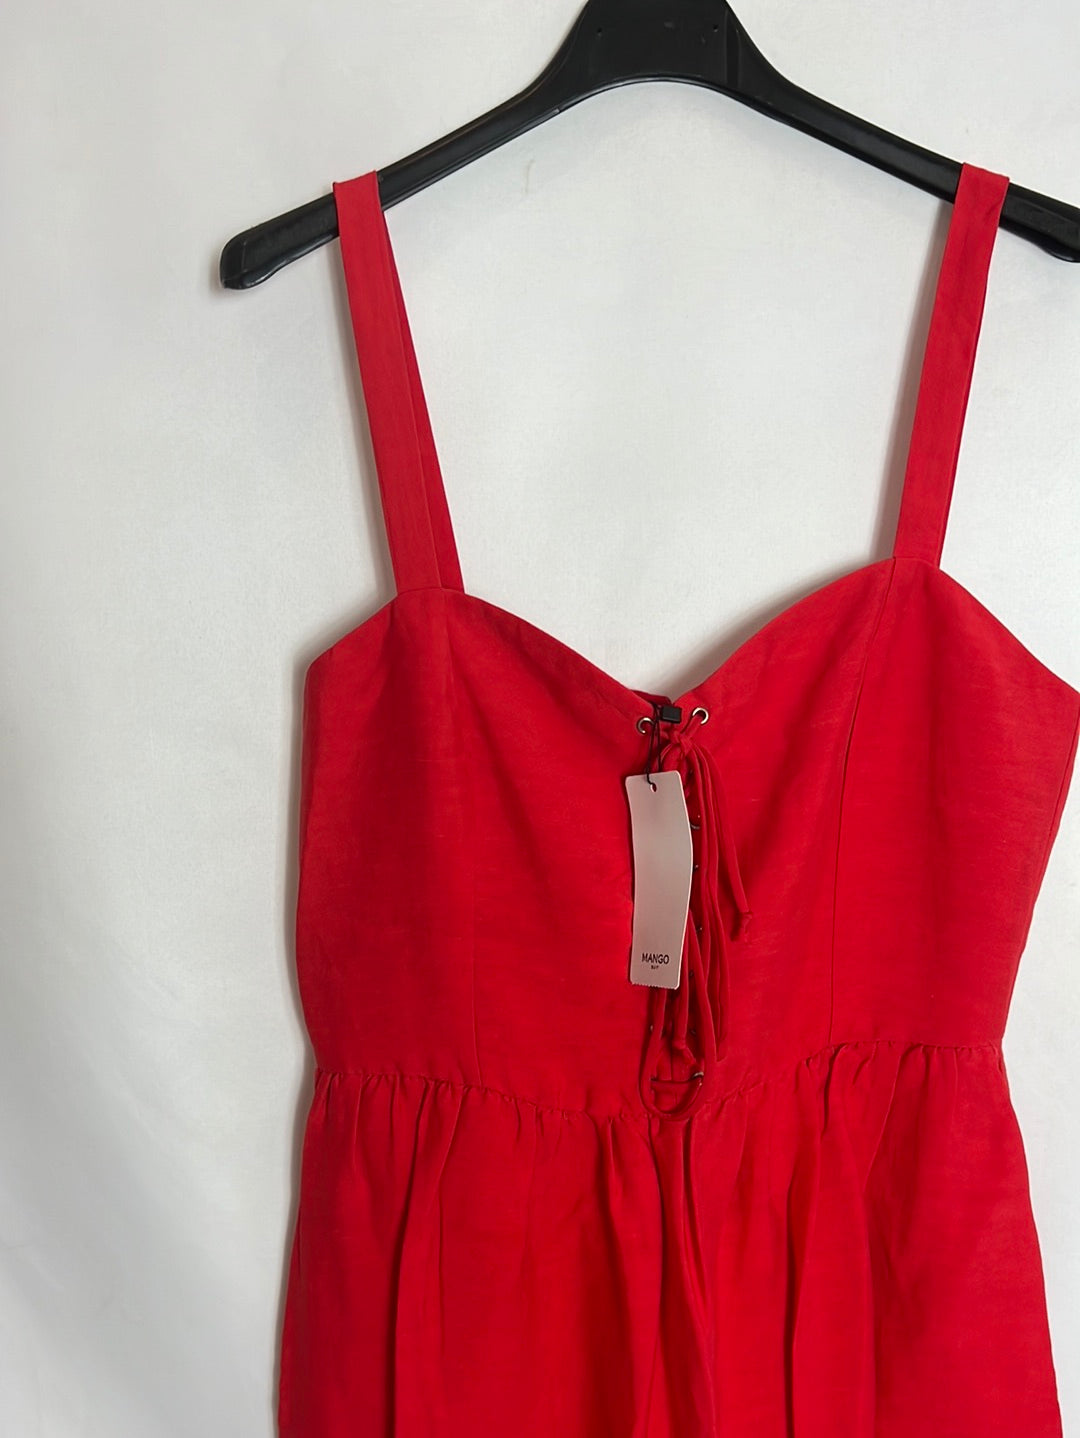 Este vestido rojo pasión de Mango solucionará tu look para la próxima boda